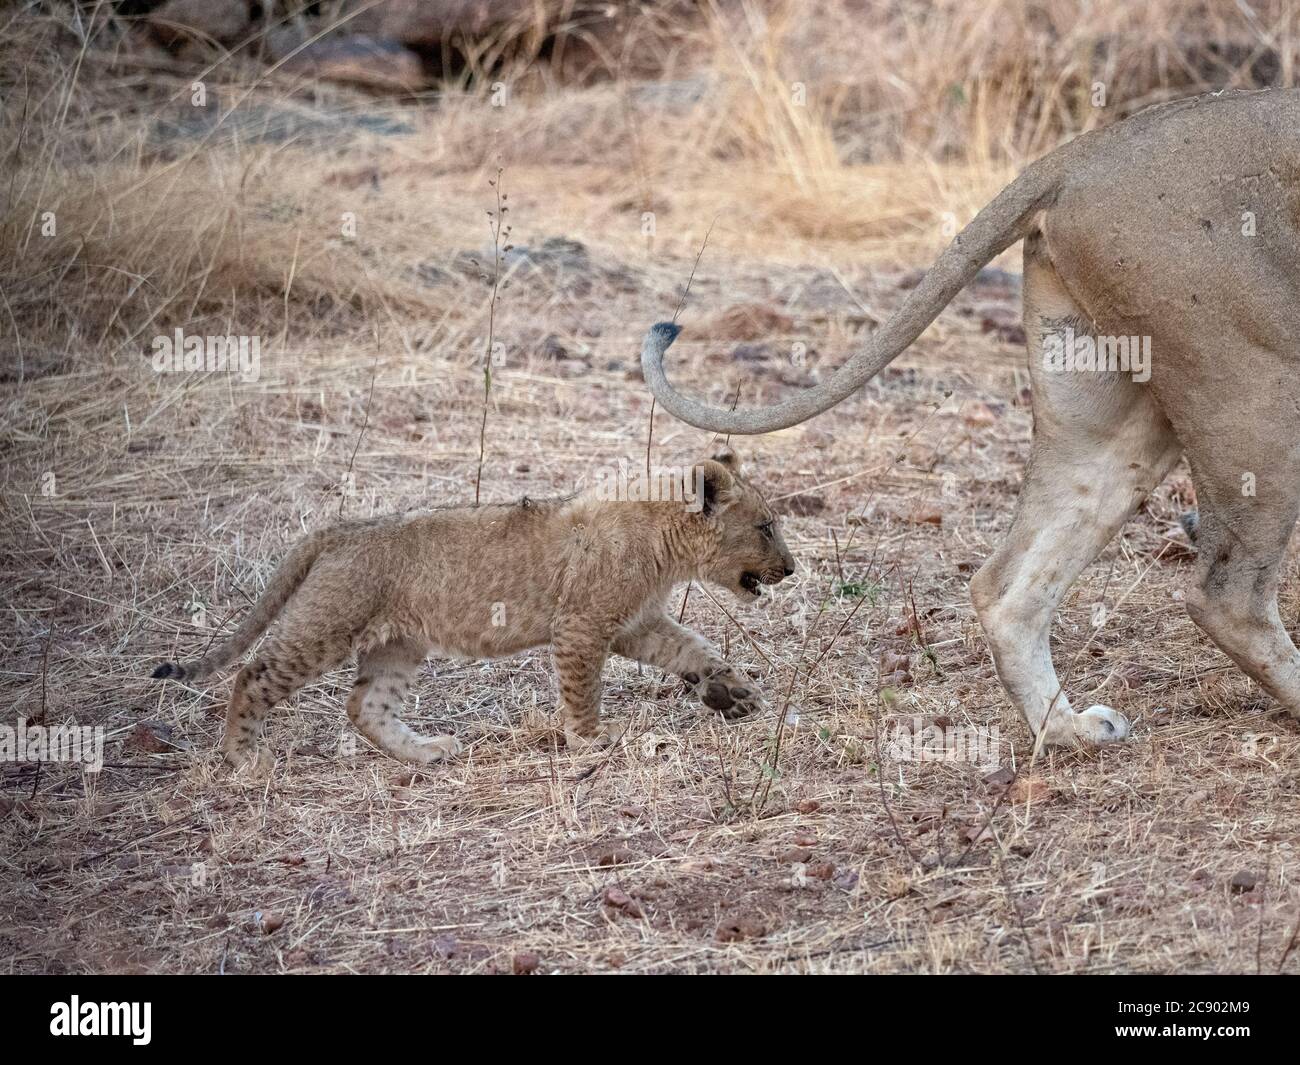 Un jeune lion cub, Panthera leo, dans le parc national de Luangwa-Sud, en Zambie. Banque D'Images